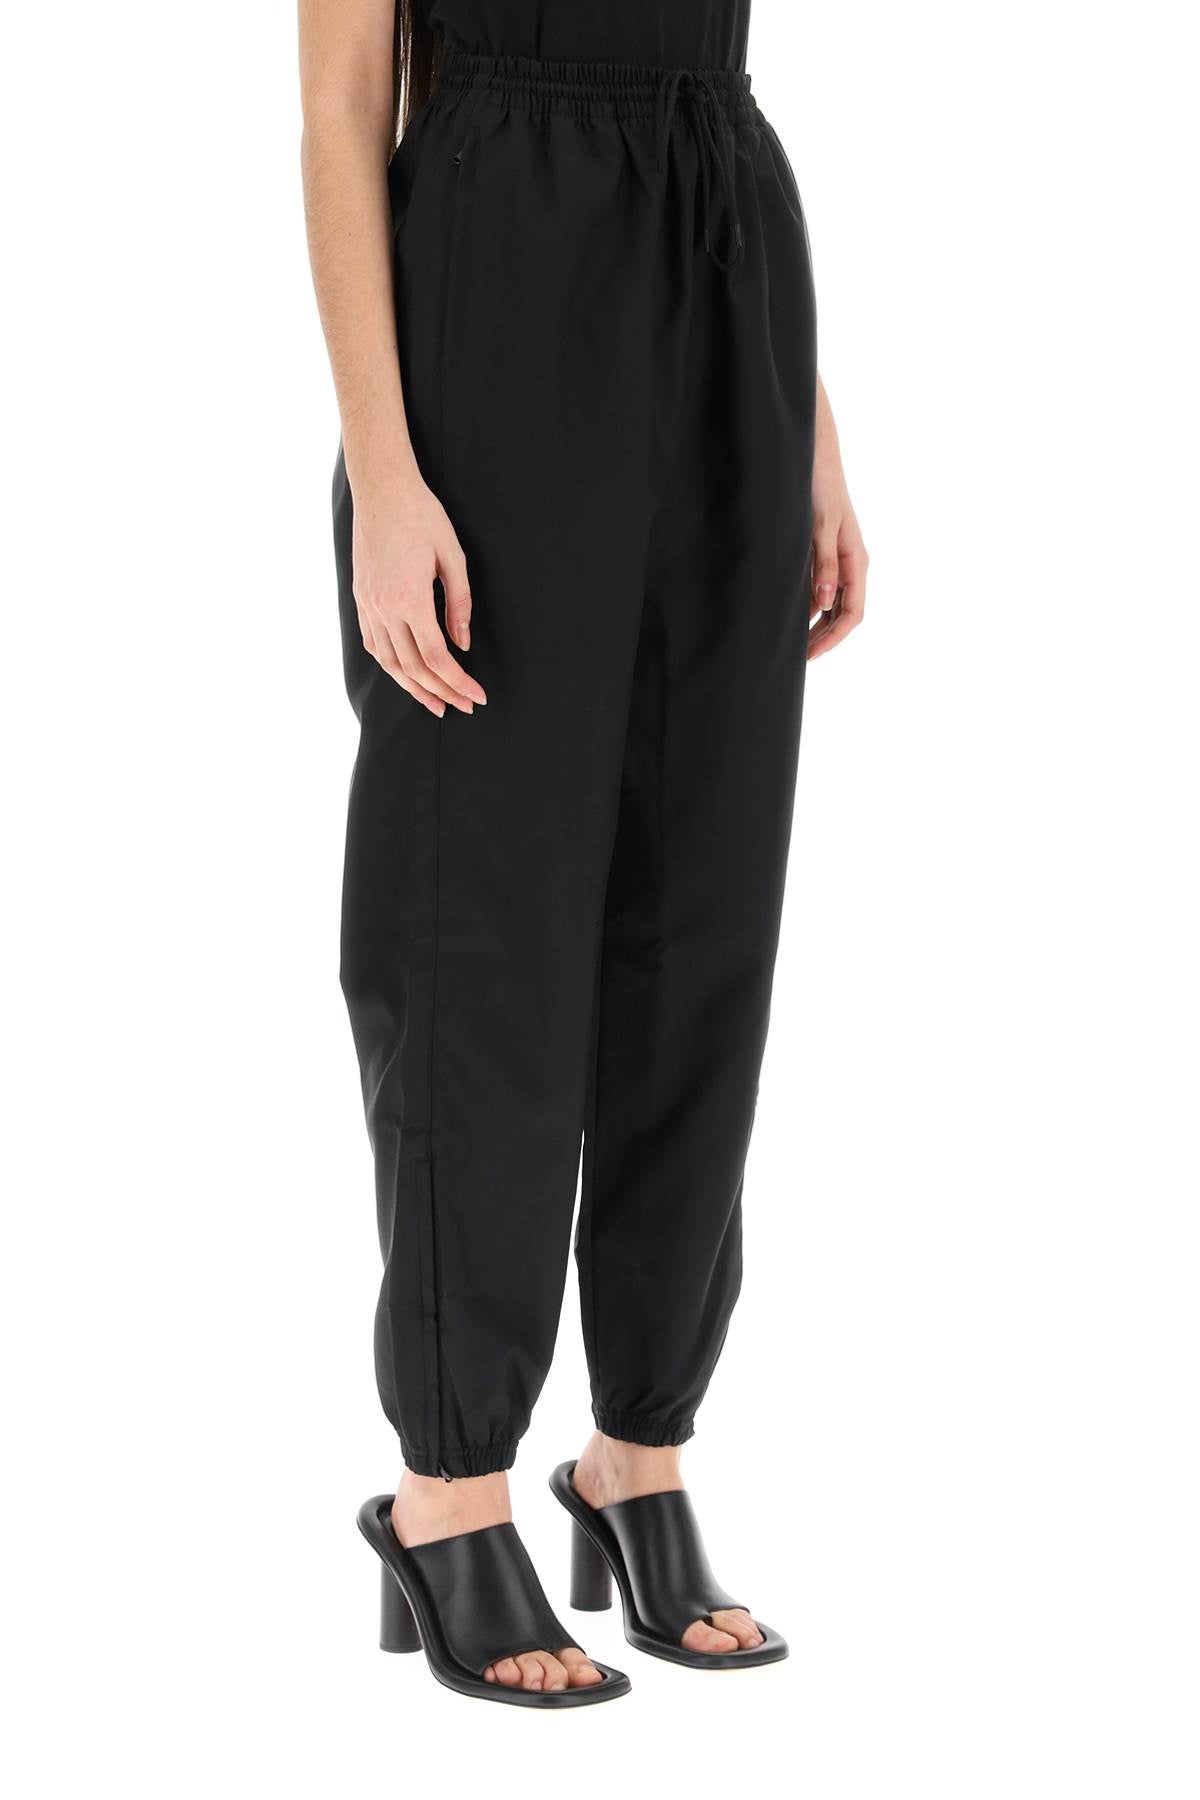 Wardrobe.nyc high-waisted nylon pants-Wardrobe.Nyc-Urbanheer